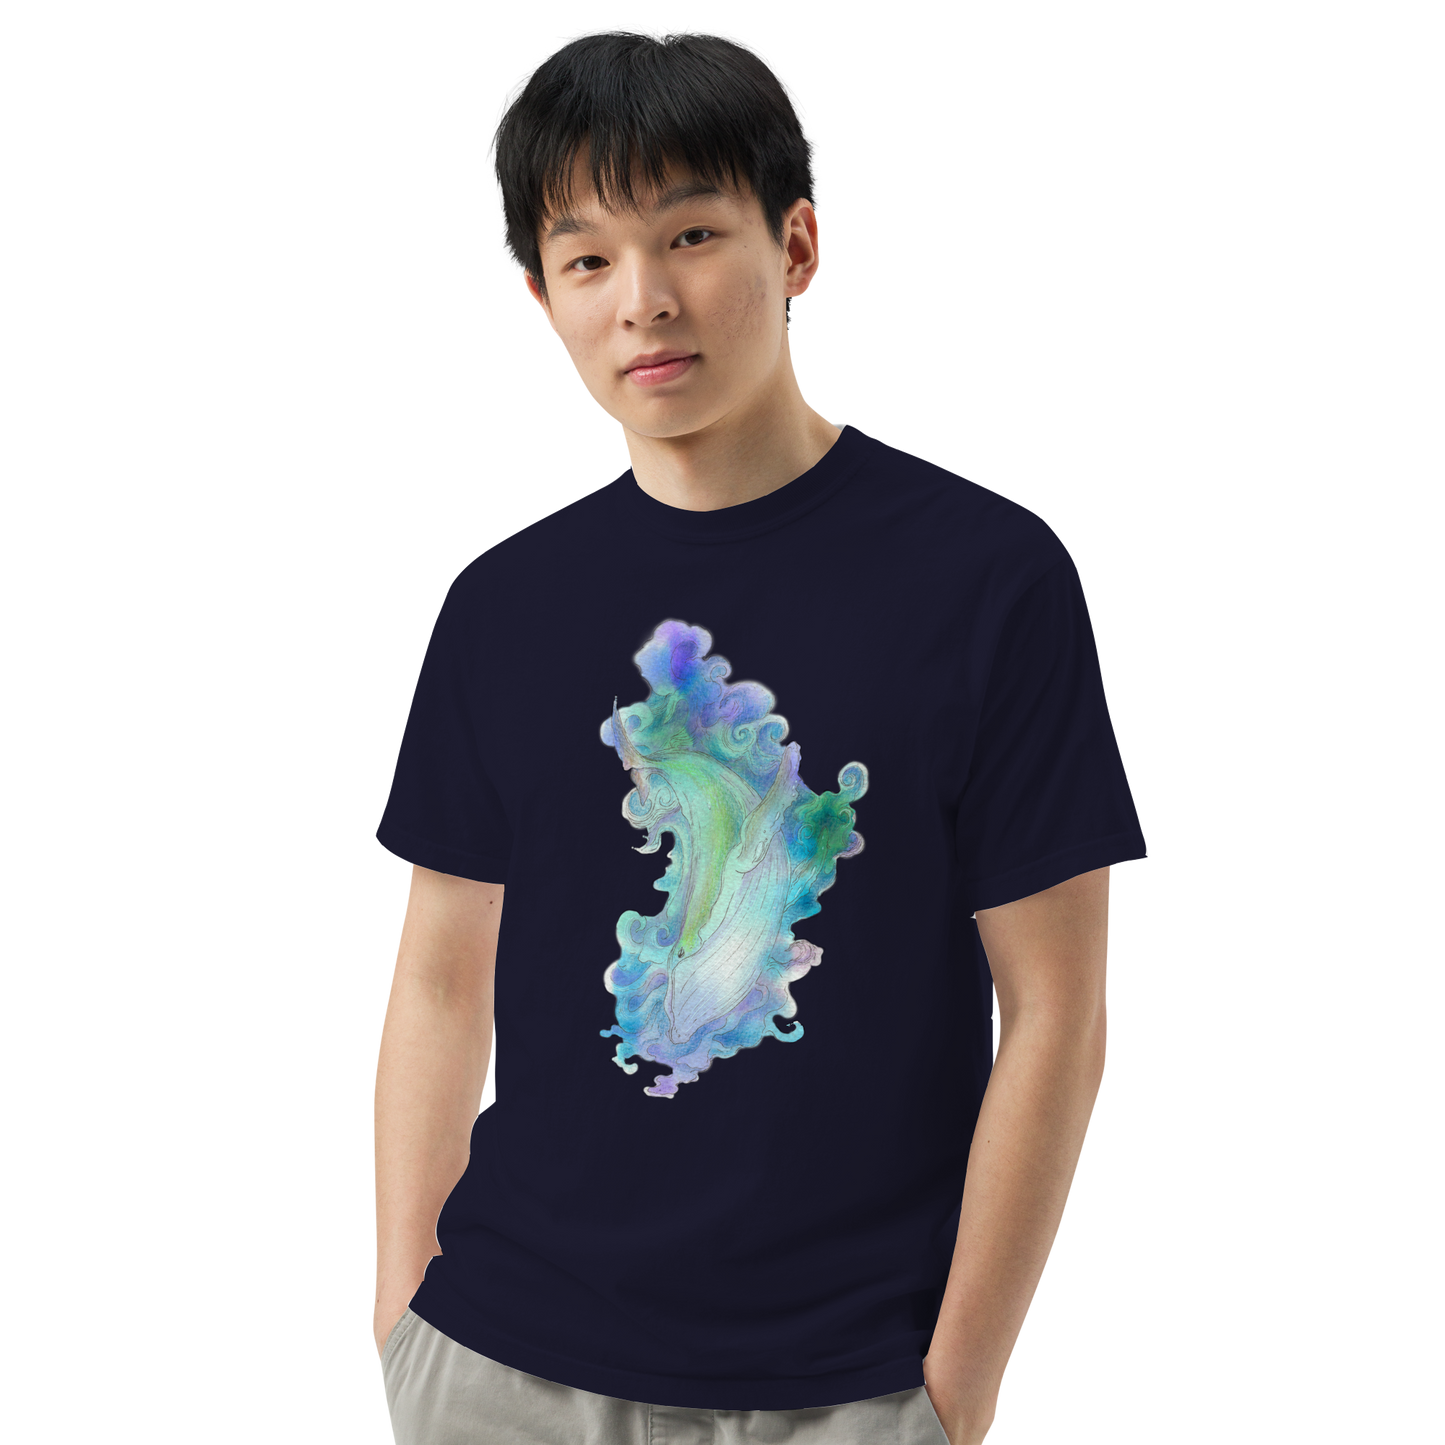 Whale-o T-shirt